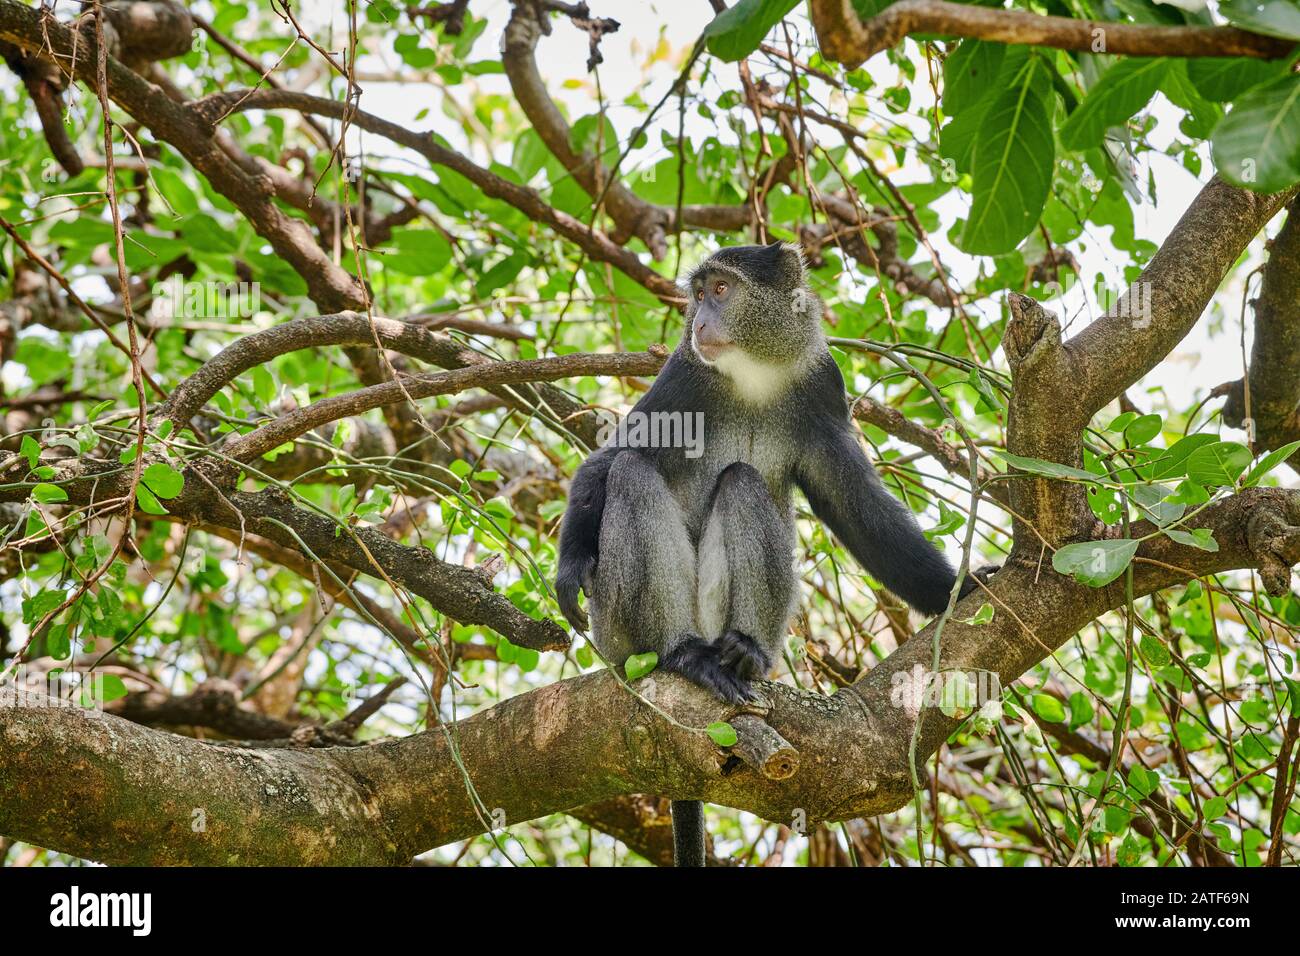 Scimmia blu o scimmia diademed seduto su un ramo (Cercopithecus mitis), Parco Nazionale del Lago Manyara, Tanzania, Africa Foto Stock